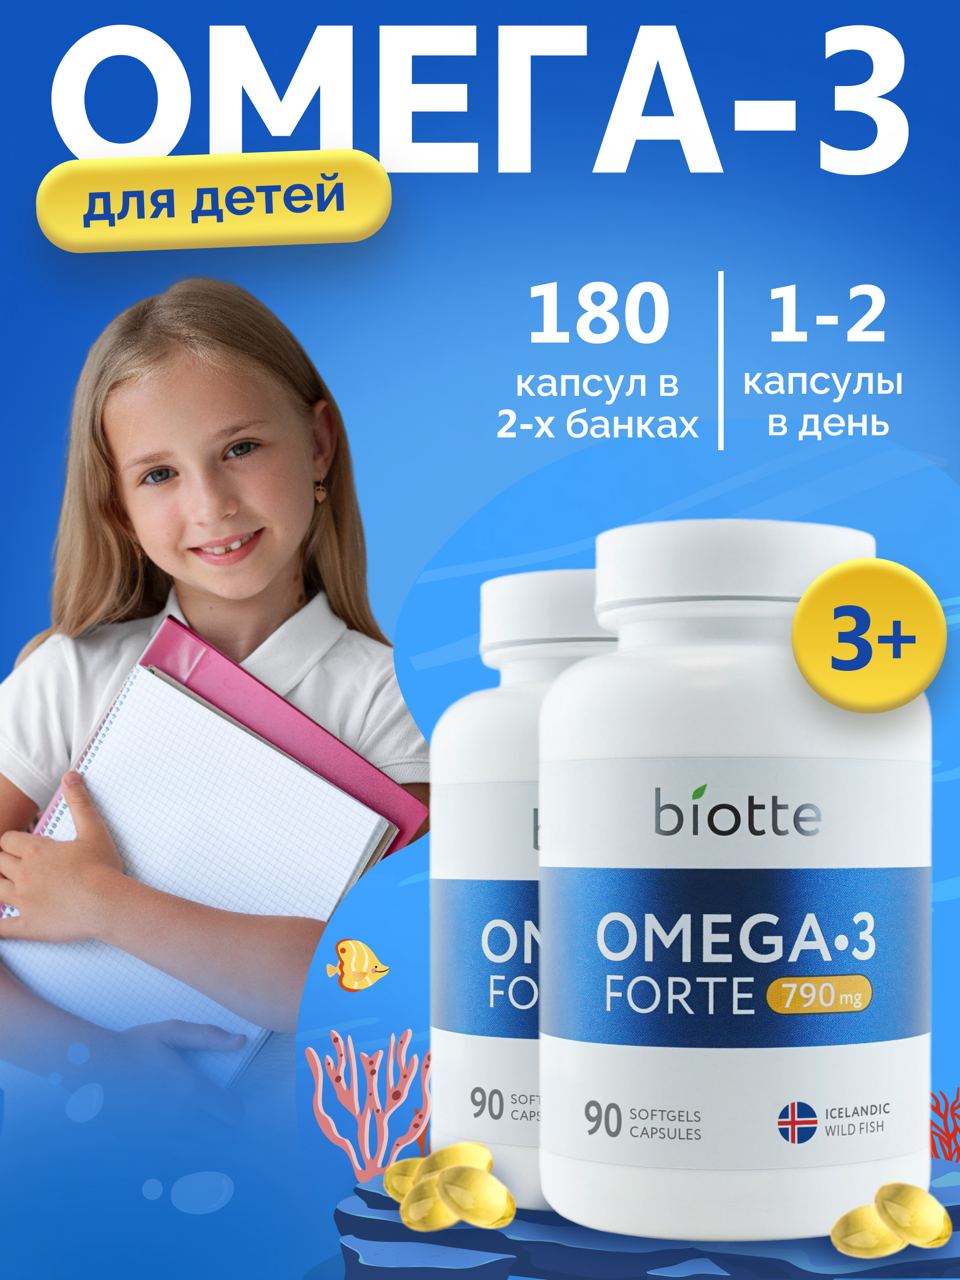 Омега 3 форте BIOTTE 790 mg fish oil премиум рыбий жир для детей подростков взрослых 180 капсул - фото 1